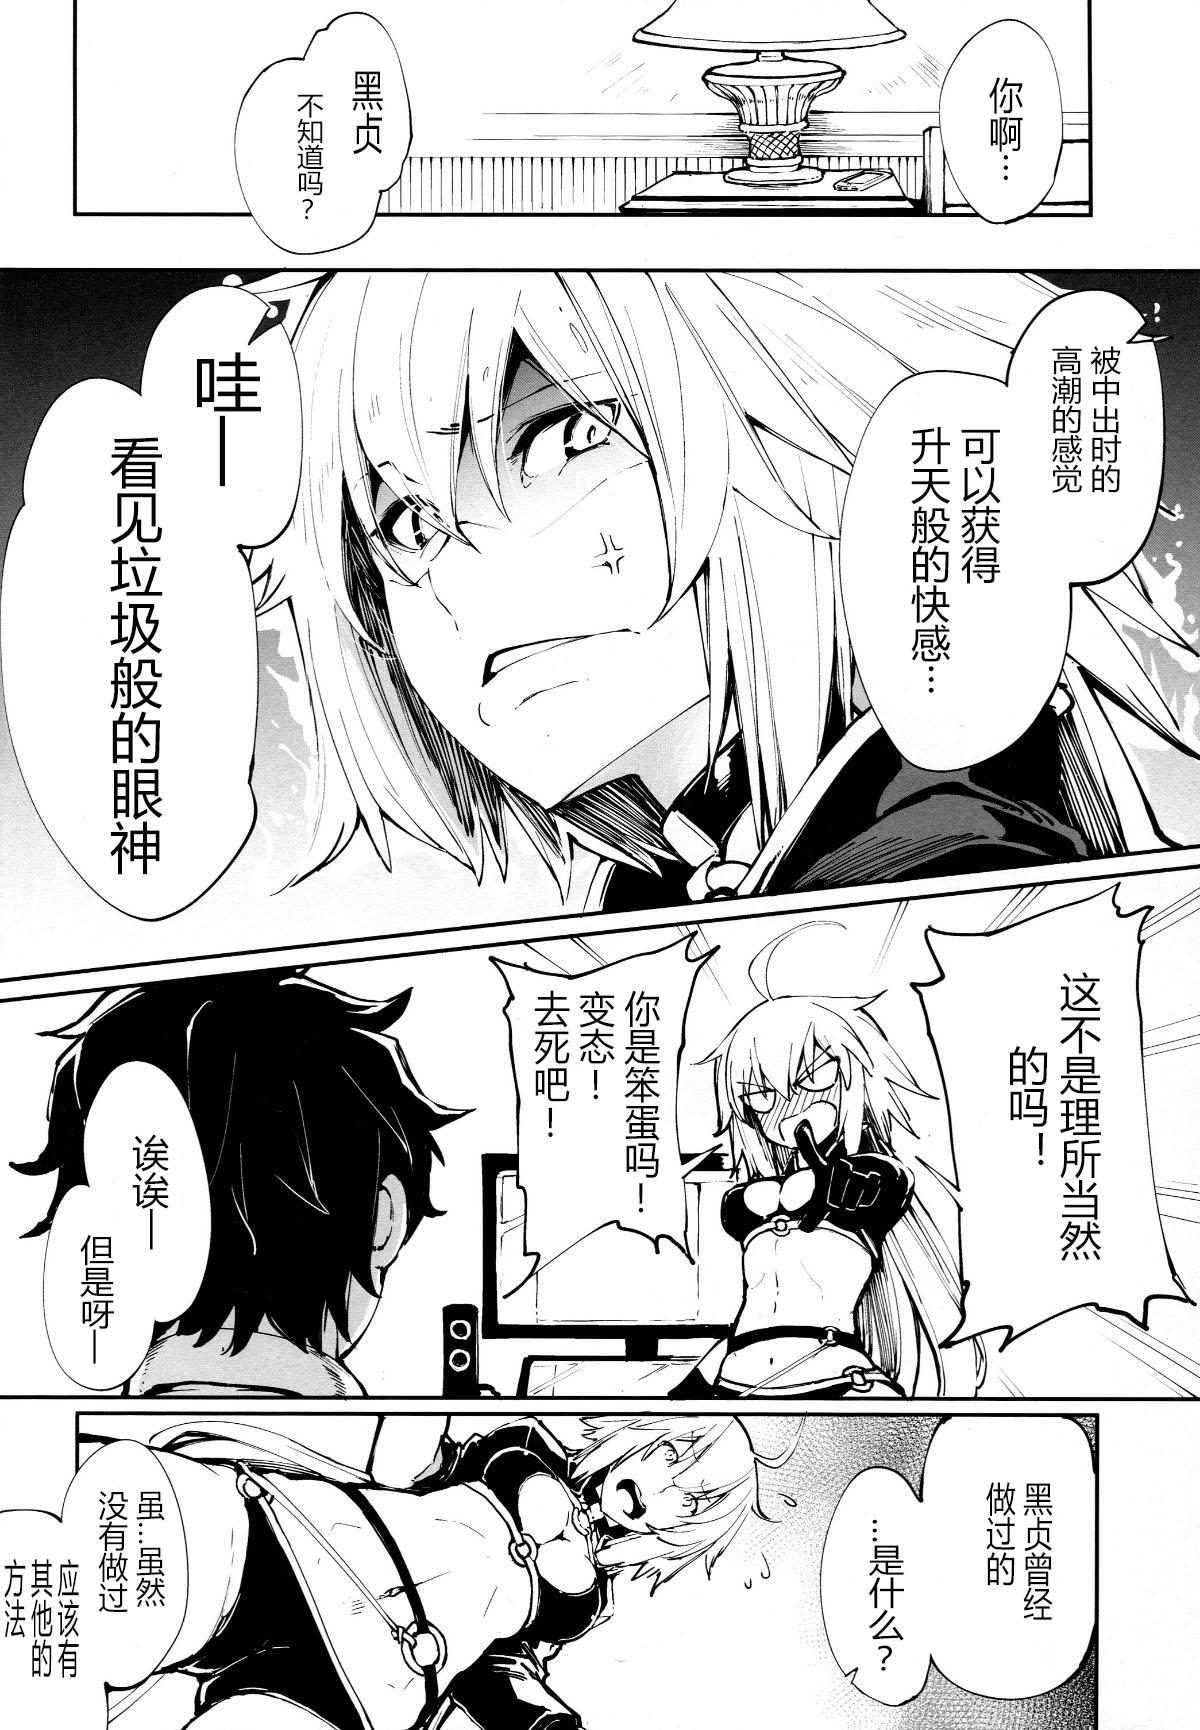 Cavalgando Kuroneko ga Nyan to Naku. - Fate grand order Foursome - Page 6